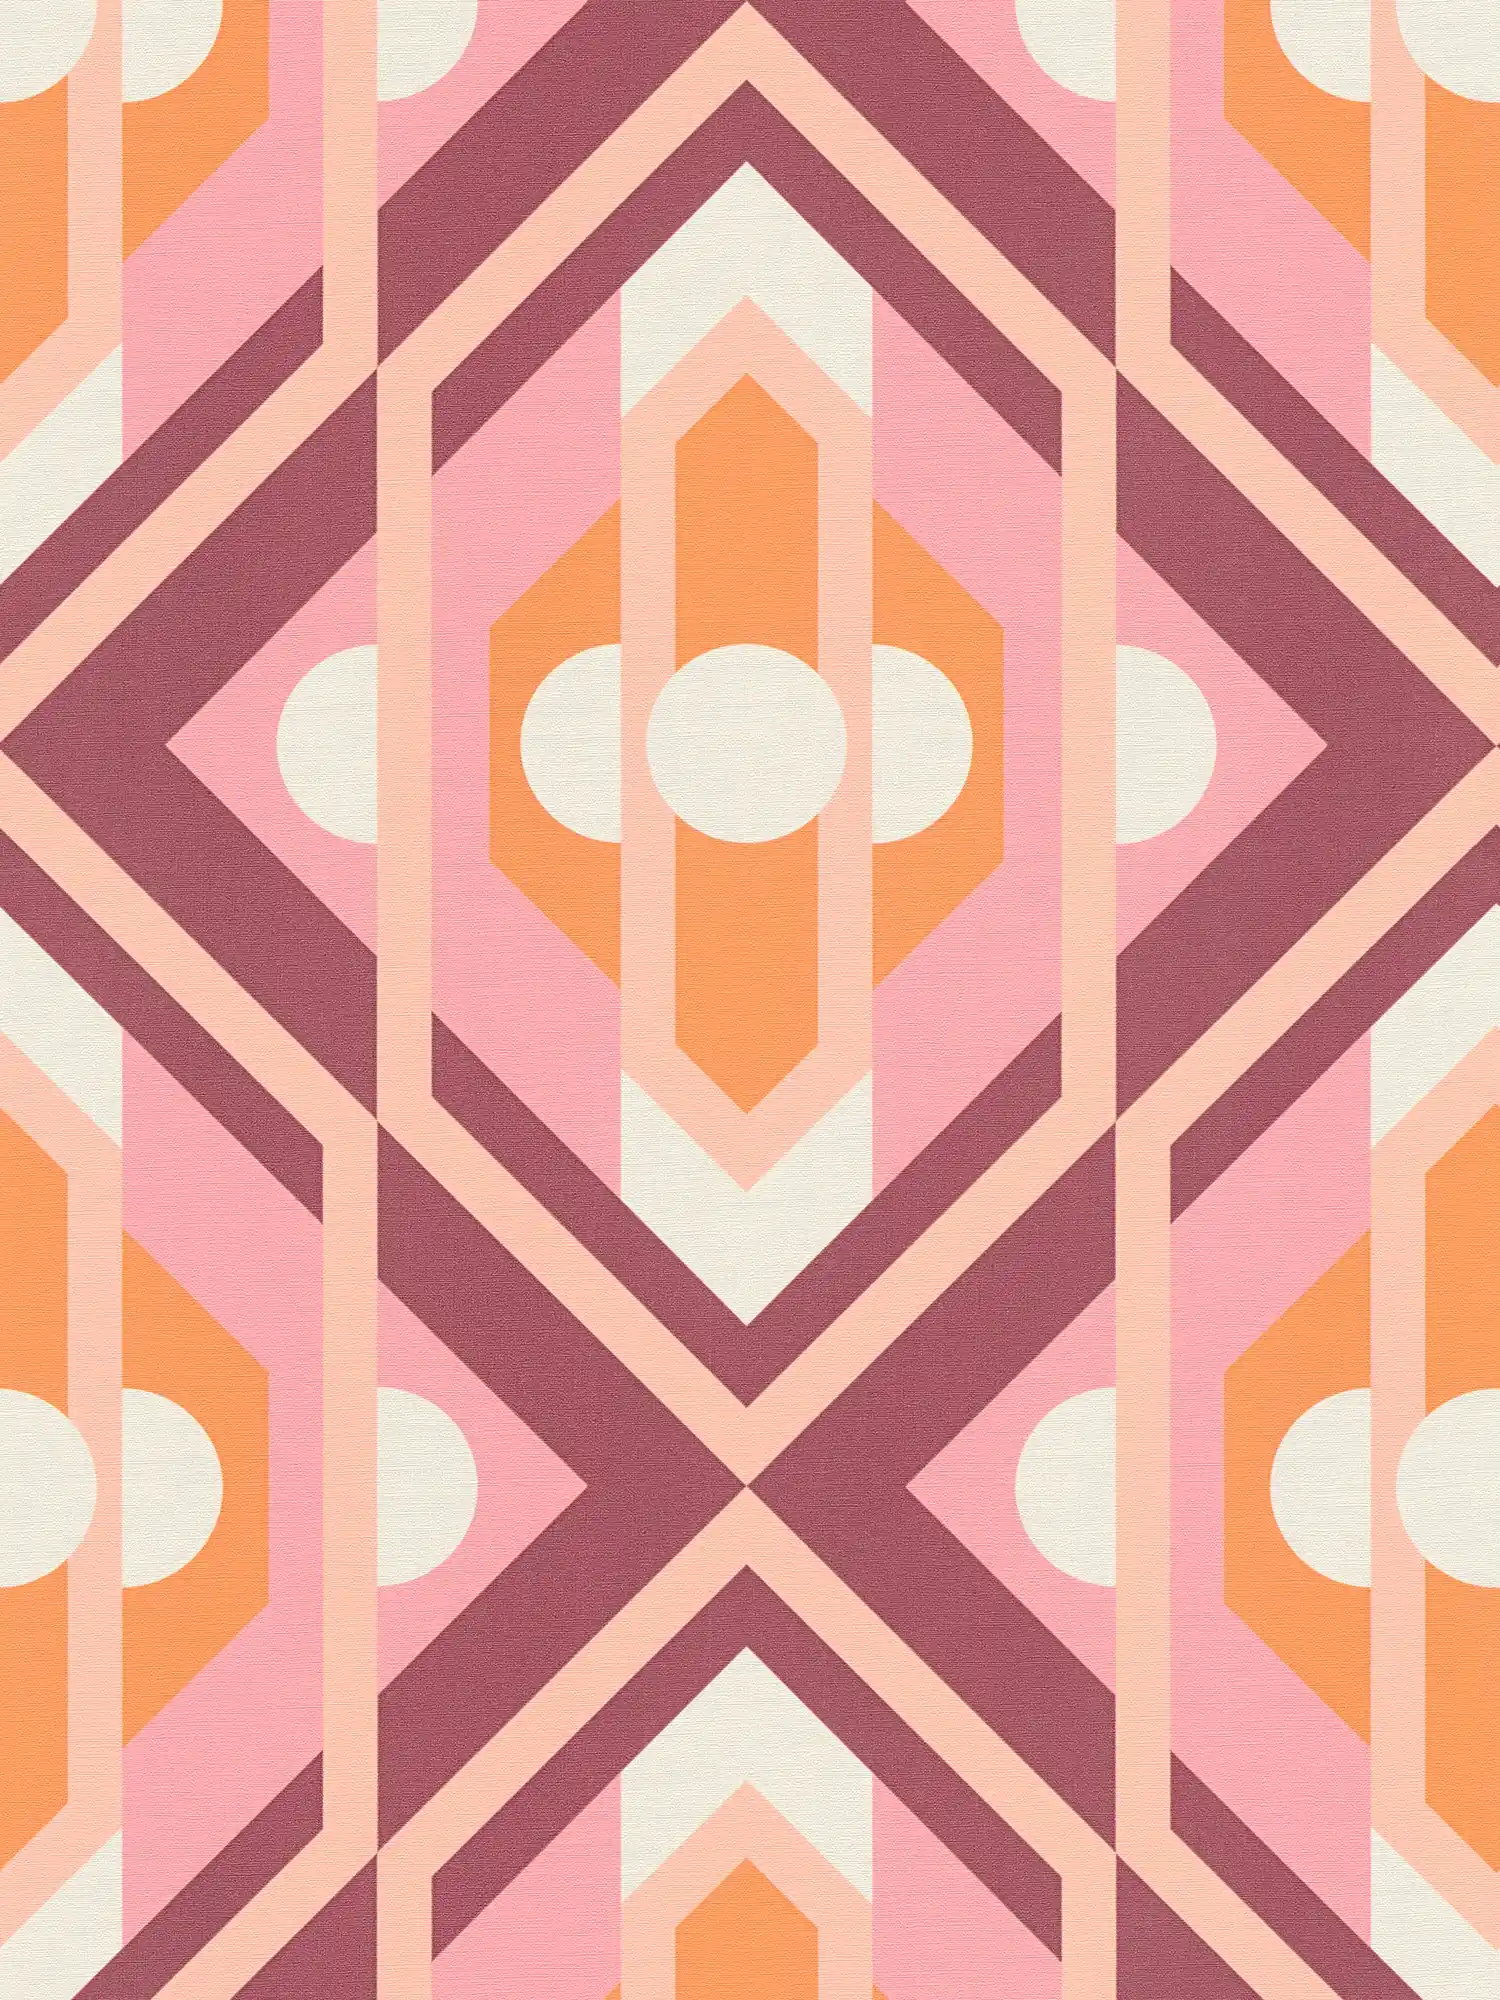 papier peint en papier intissé avec ornements géométriques de style rétro - orange, rose, blanc
